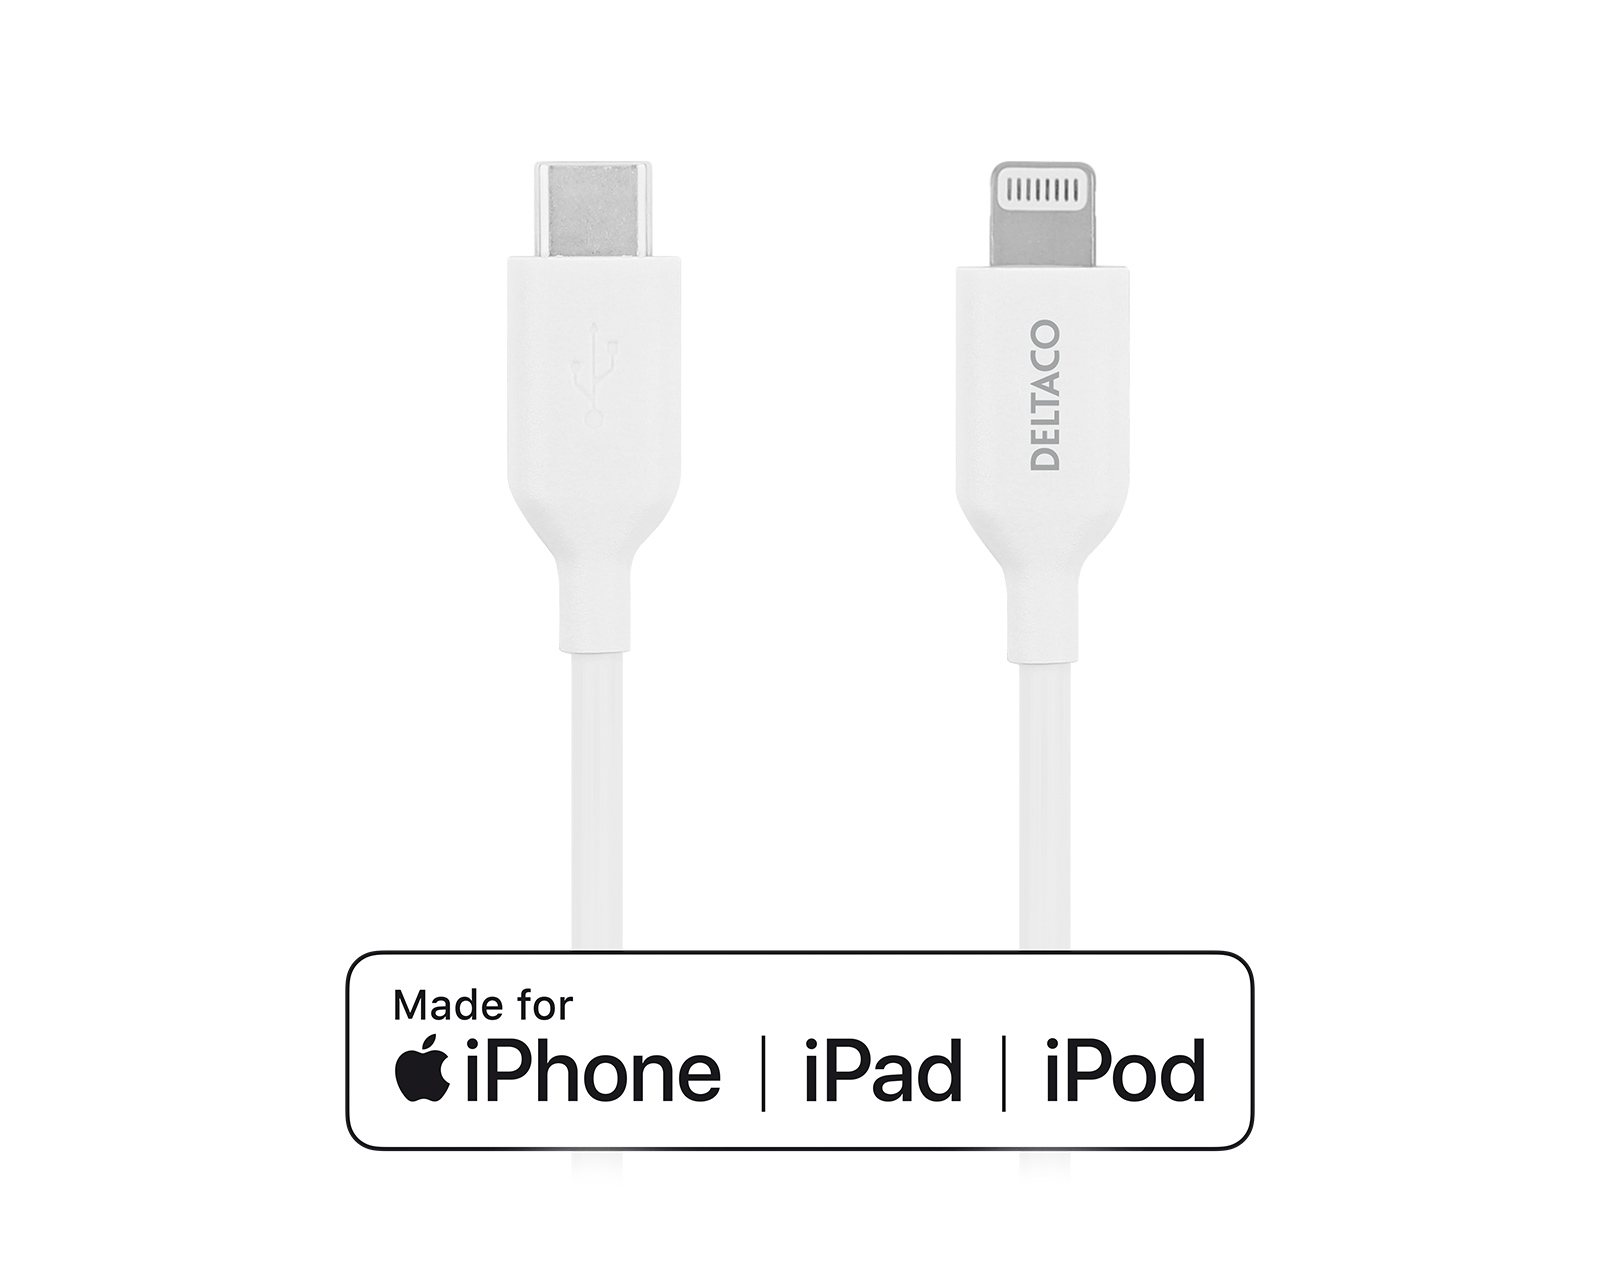 Кабели для iphone ipad ipod. Кабель для IPOD, iphone, IPAD Apple USB-C to Lightning Cable 1 m. Можно ли использовать тайпси Лайнтнинг разных фирм.